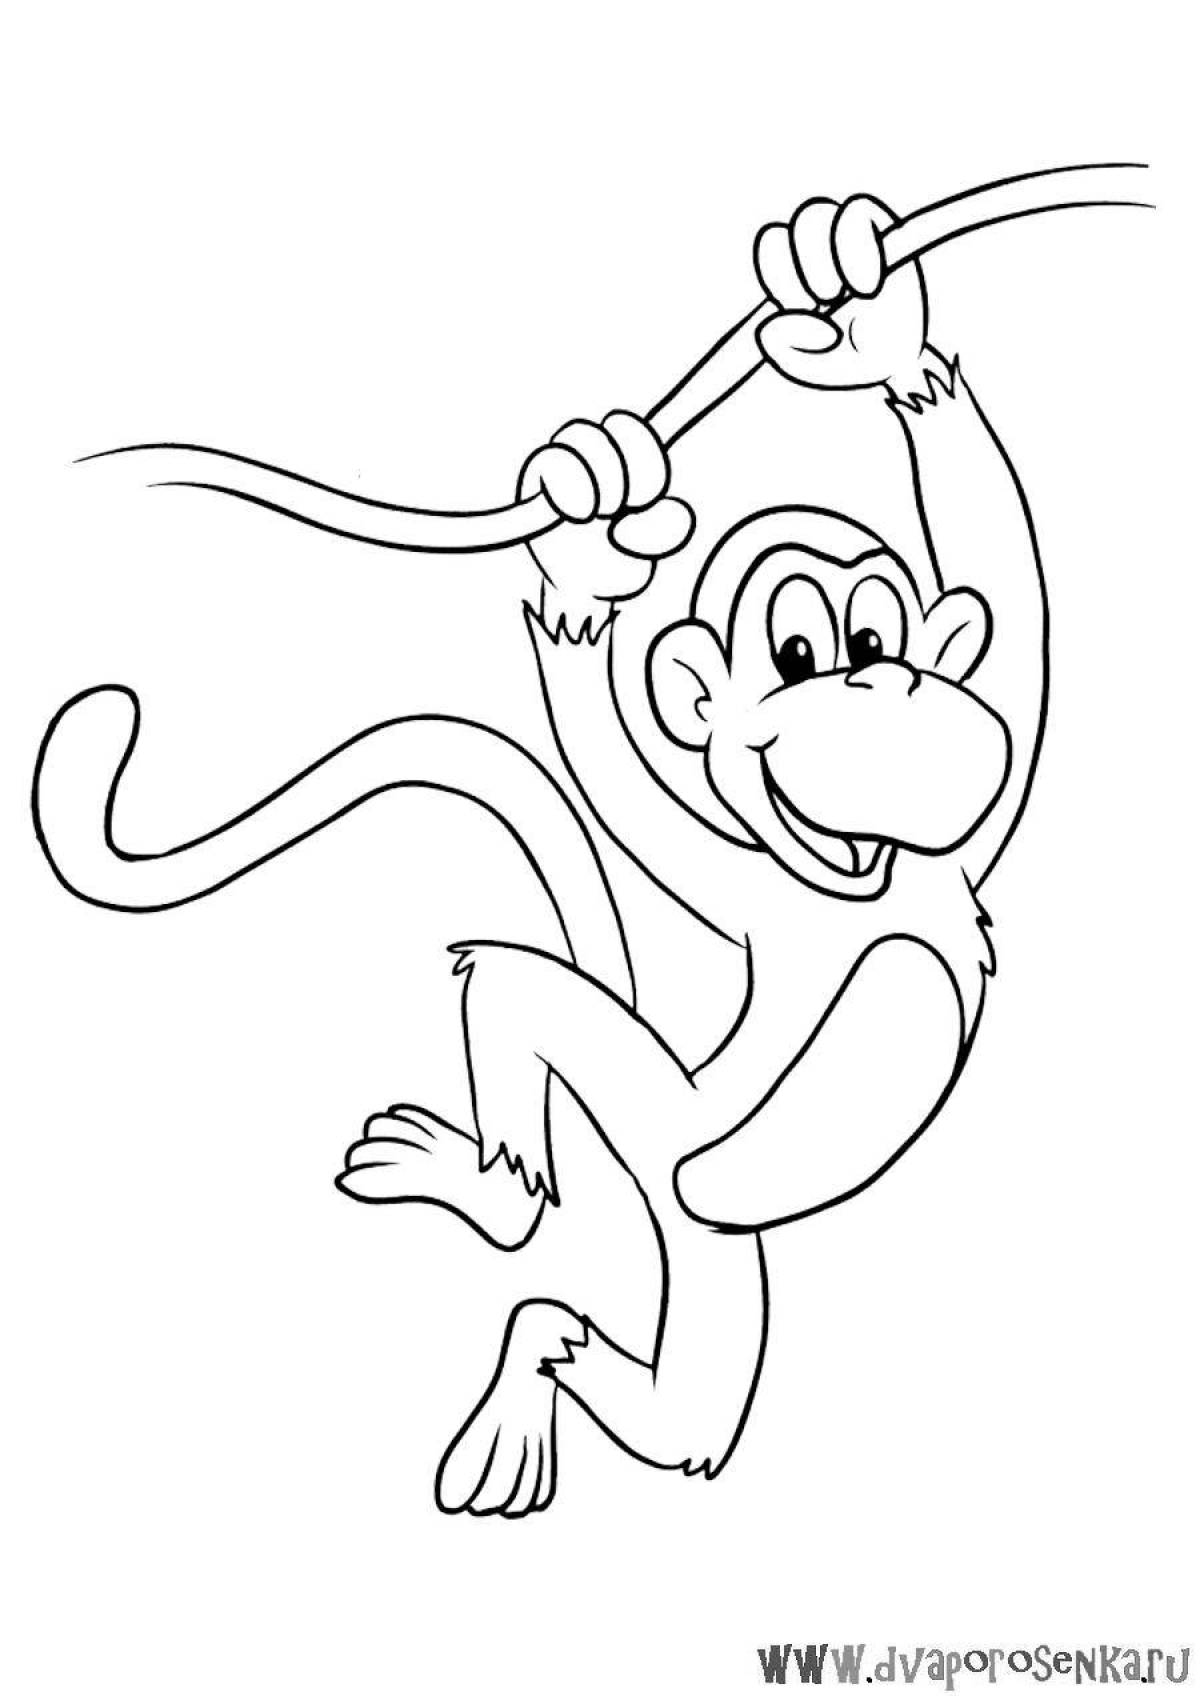 Monkey drawing #1